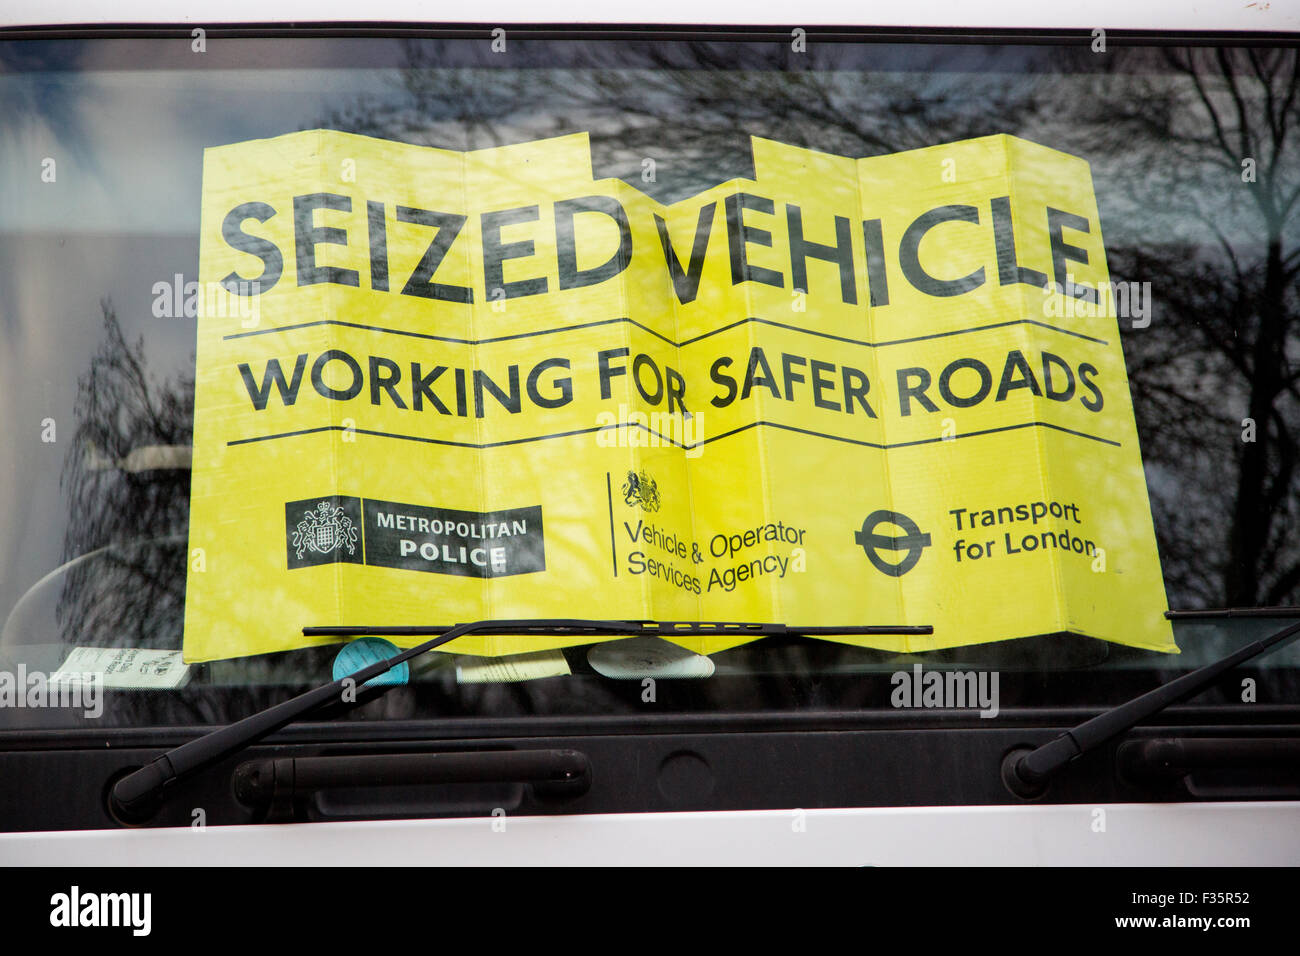 Transport for London's Task Force poids lourds mis en place un point de contrôle pour s'assurer que les véhicules sont conformes aux exigences de sécurité Banque D'Images